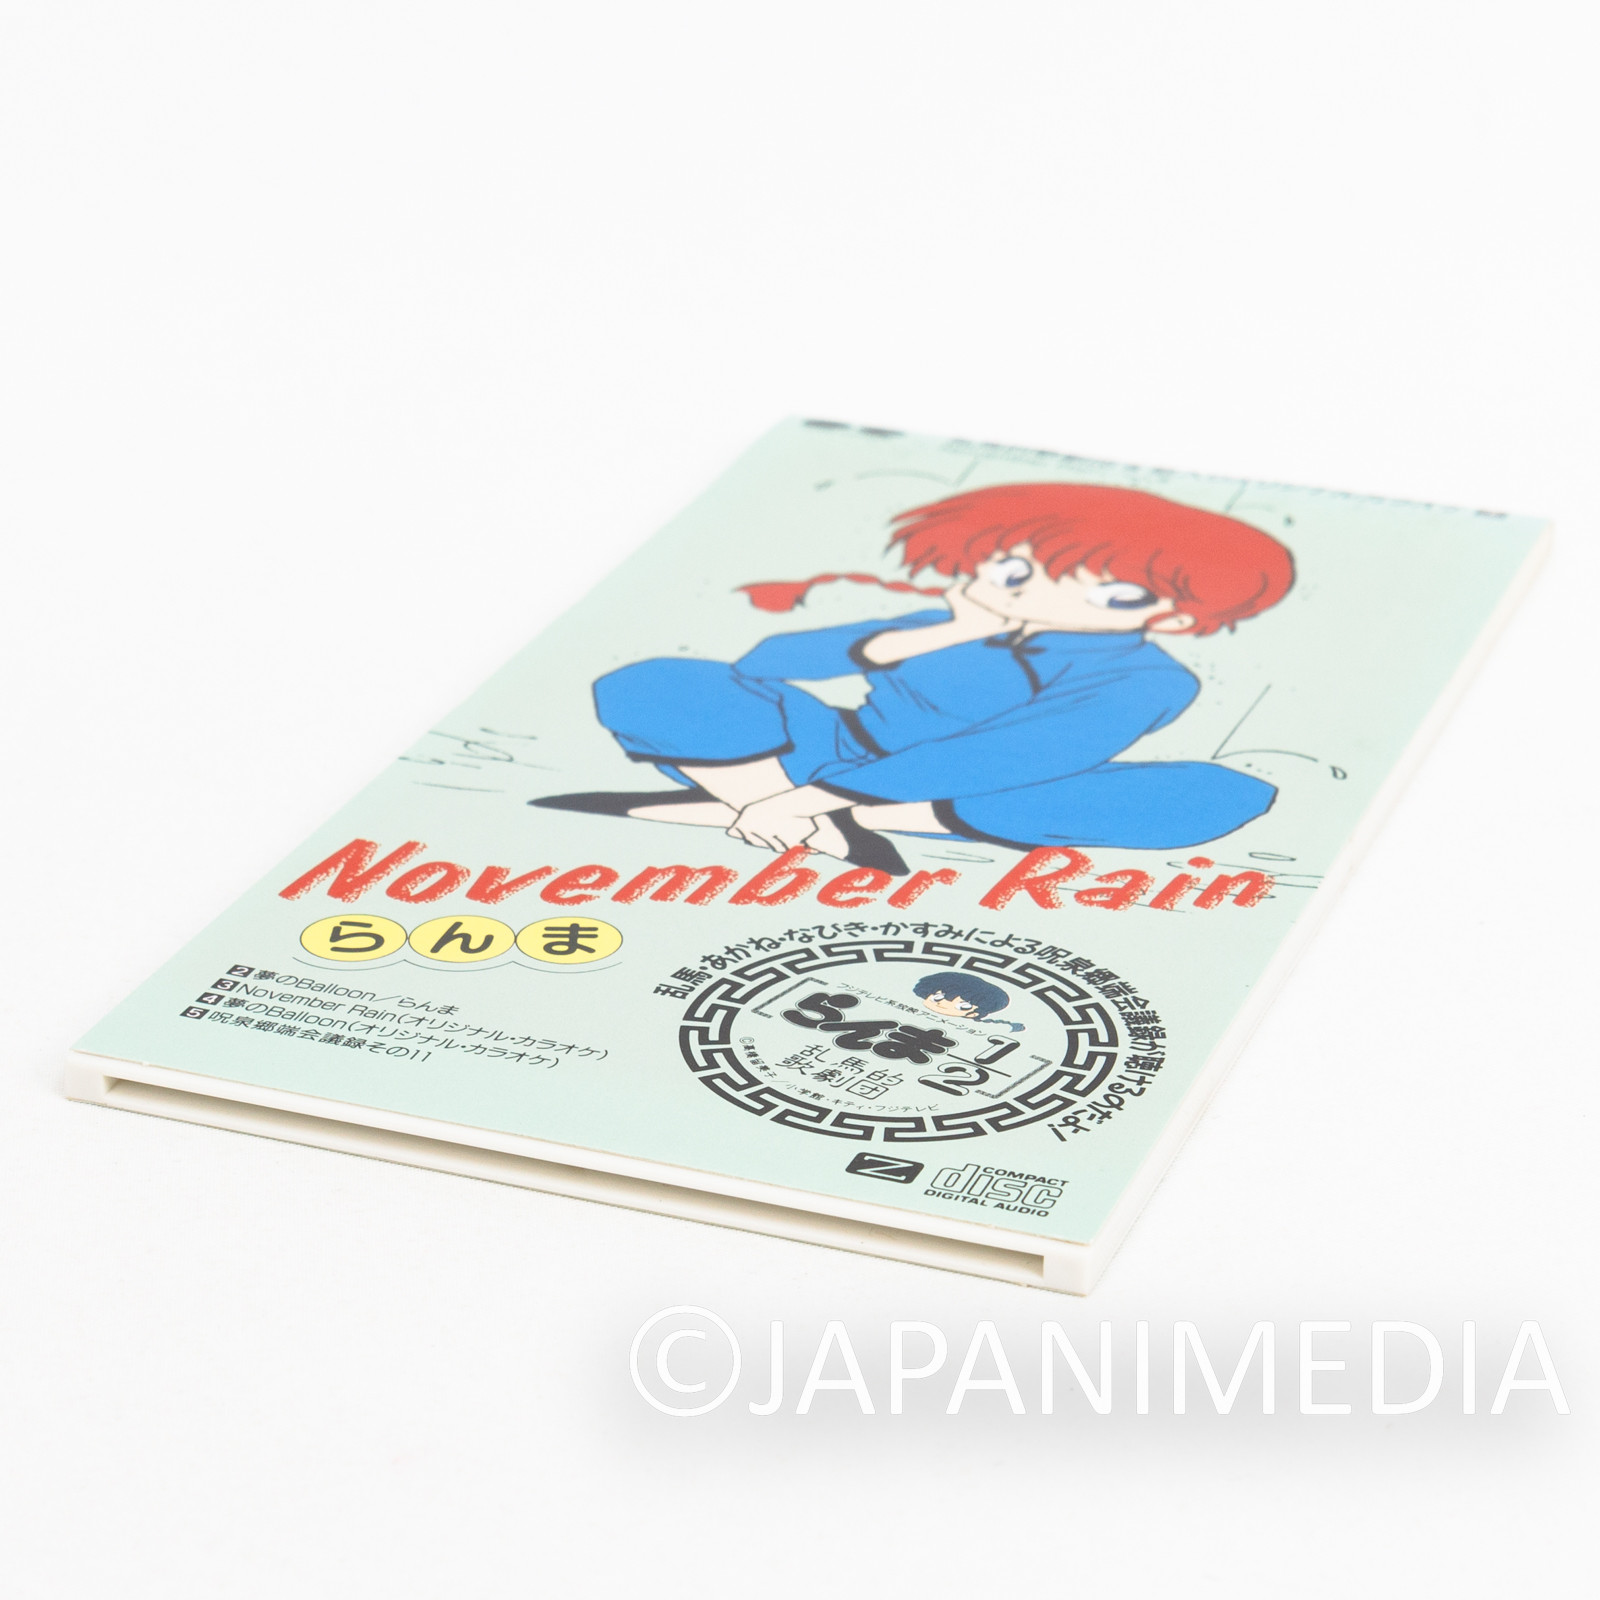 Ranma 1/2 "November Rain" Japan 3 Inch (8cm) Single JAPAN CD ANIME